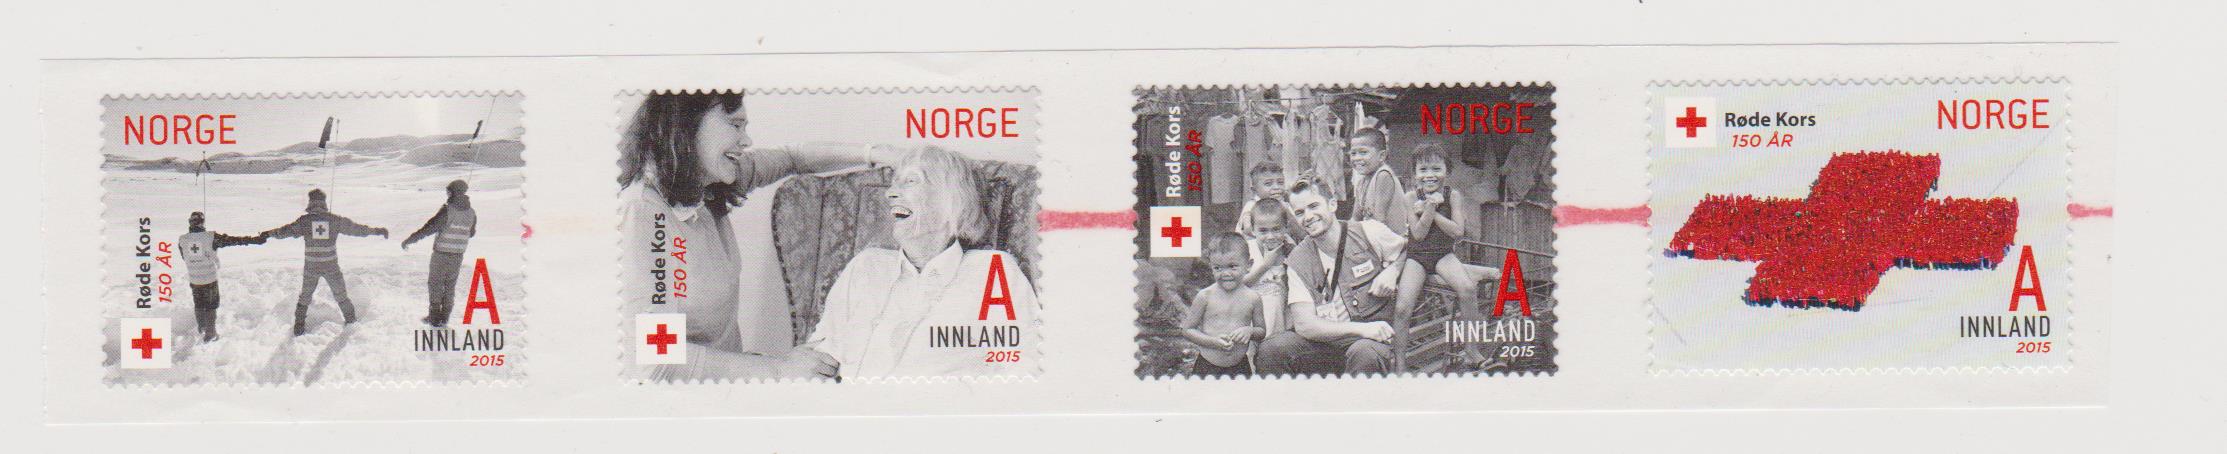 Norvegia croce rossa 001